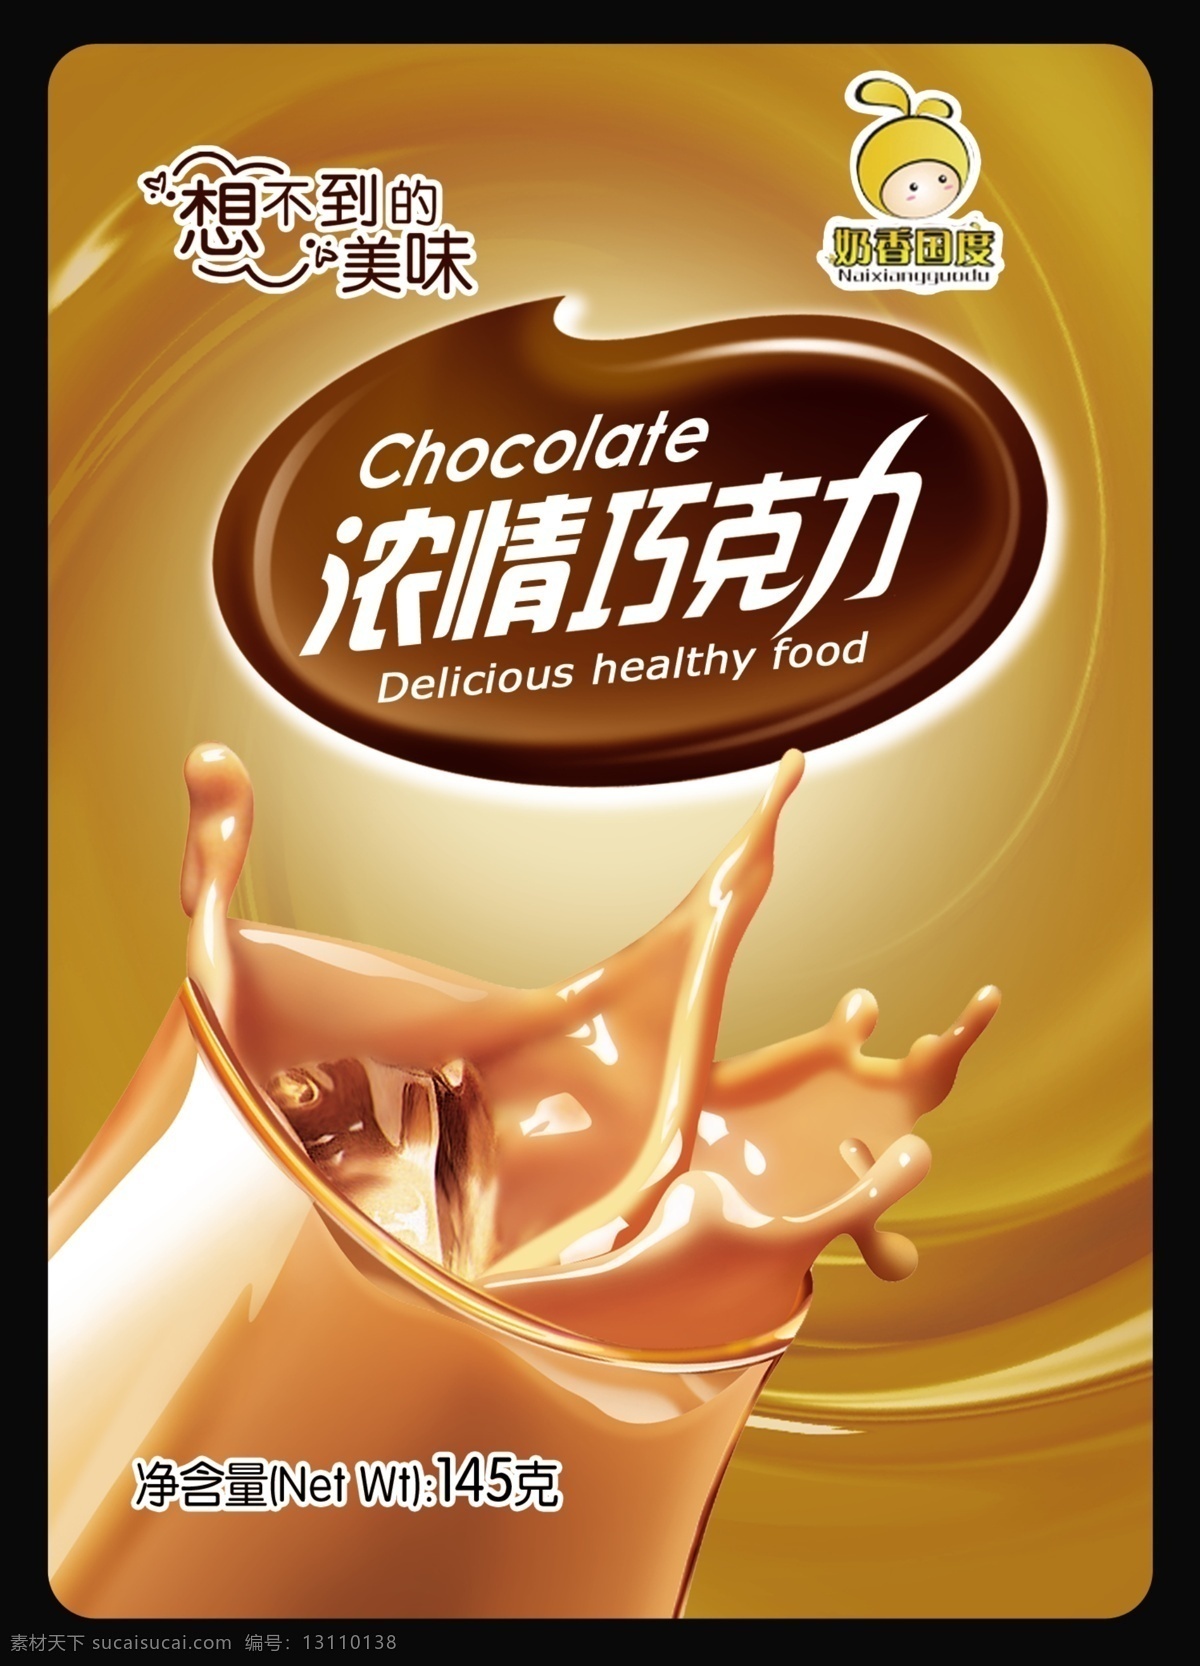 巧克力包装 巧克力标志 浓情巧克力 巧克力 logo 包装设计 广告设计模板 源文件